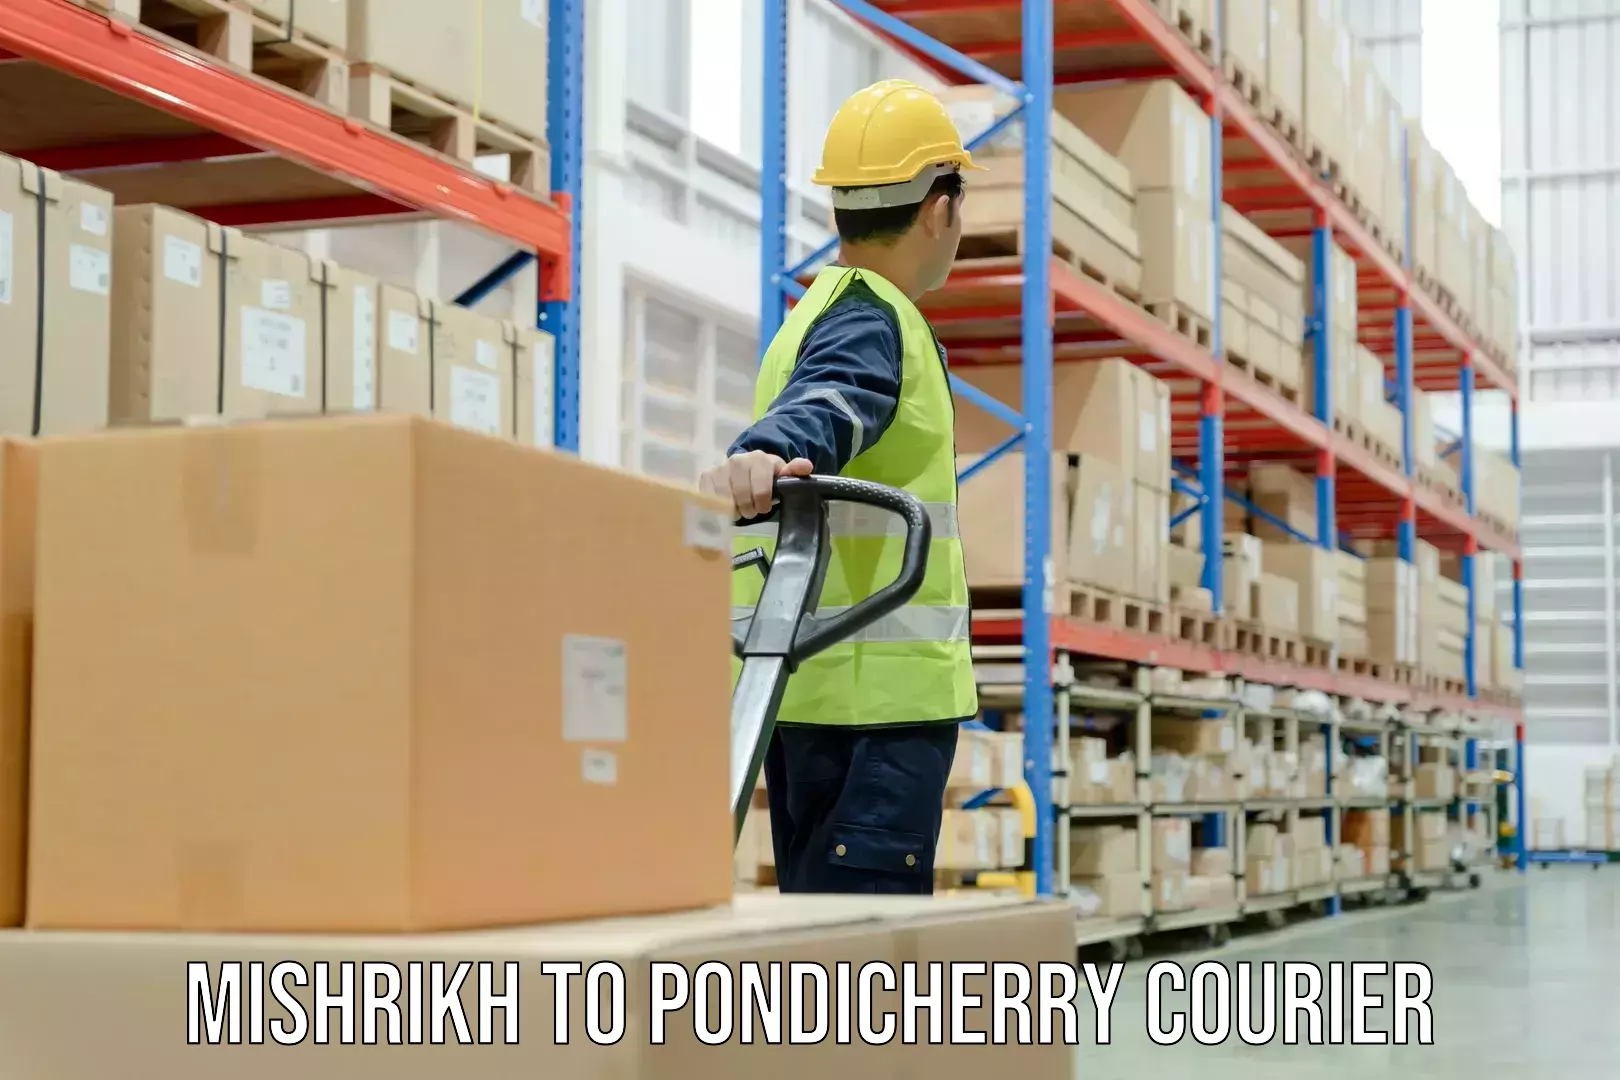 High-priority parcel service Mishrikh to Pondicherry